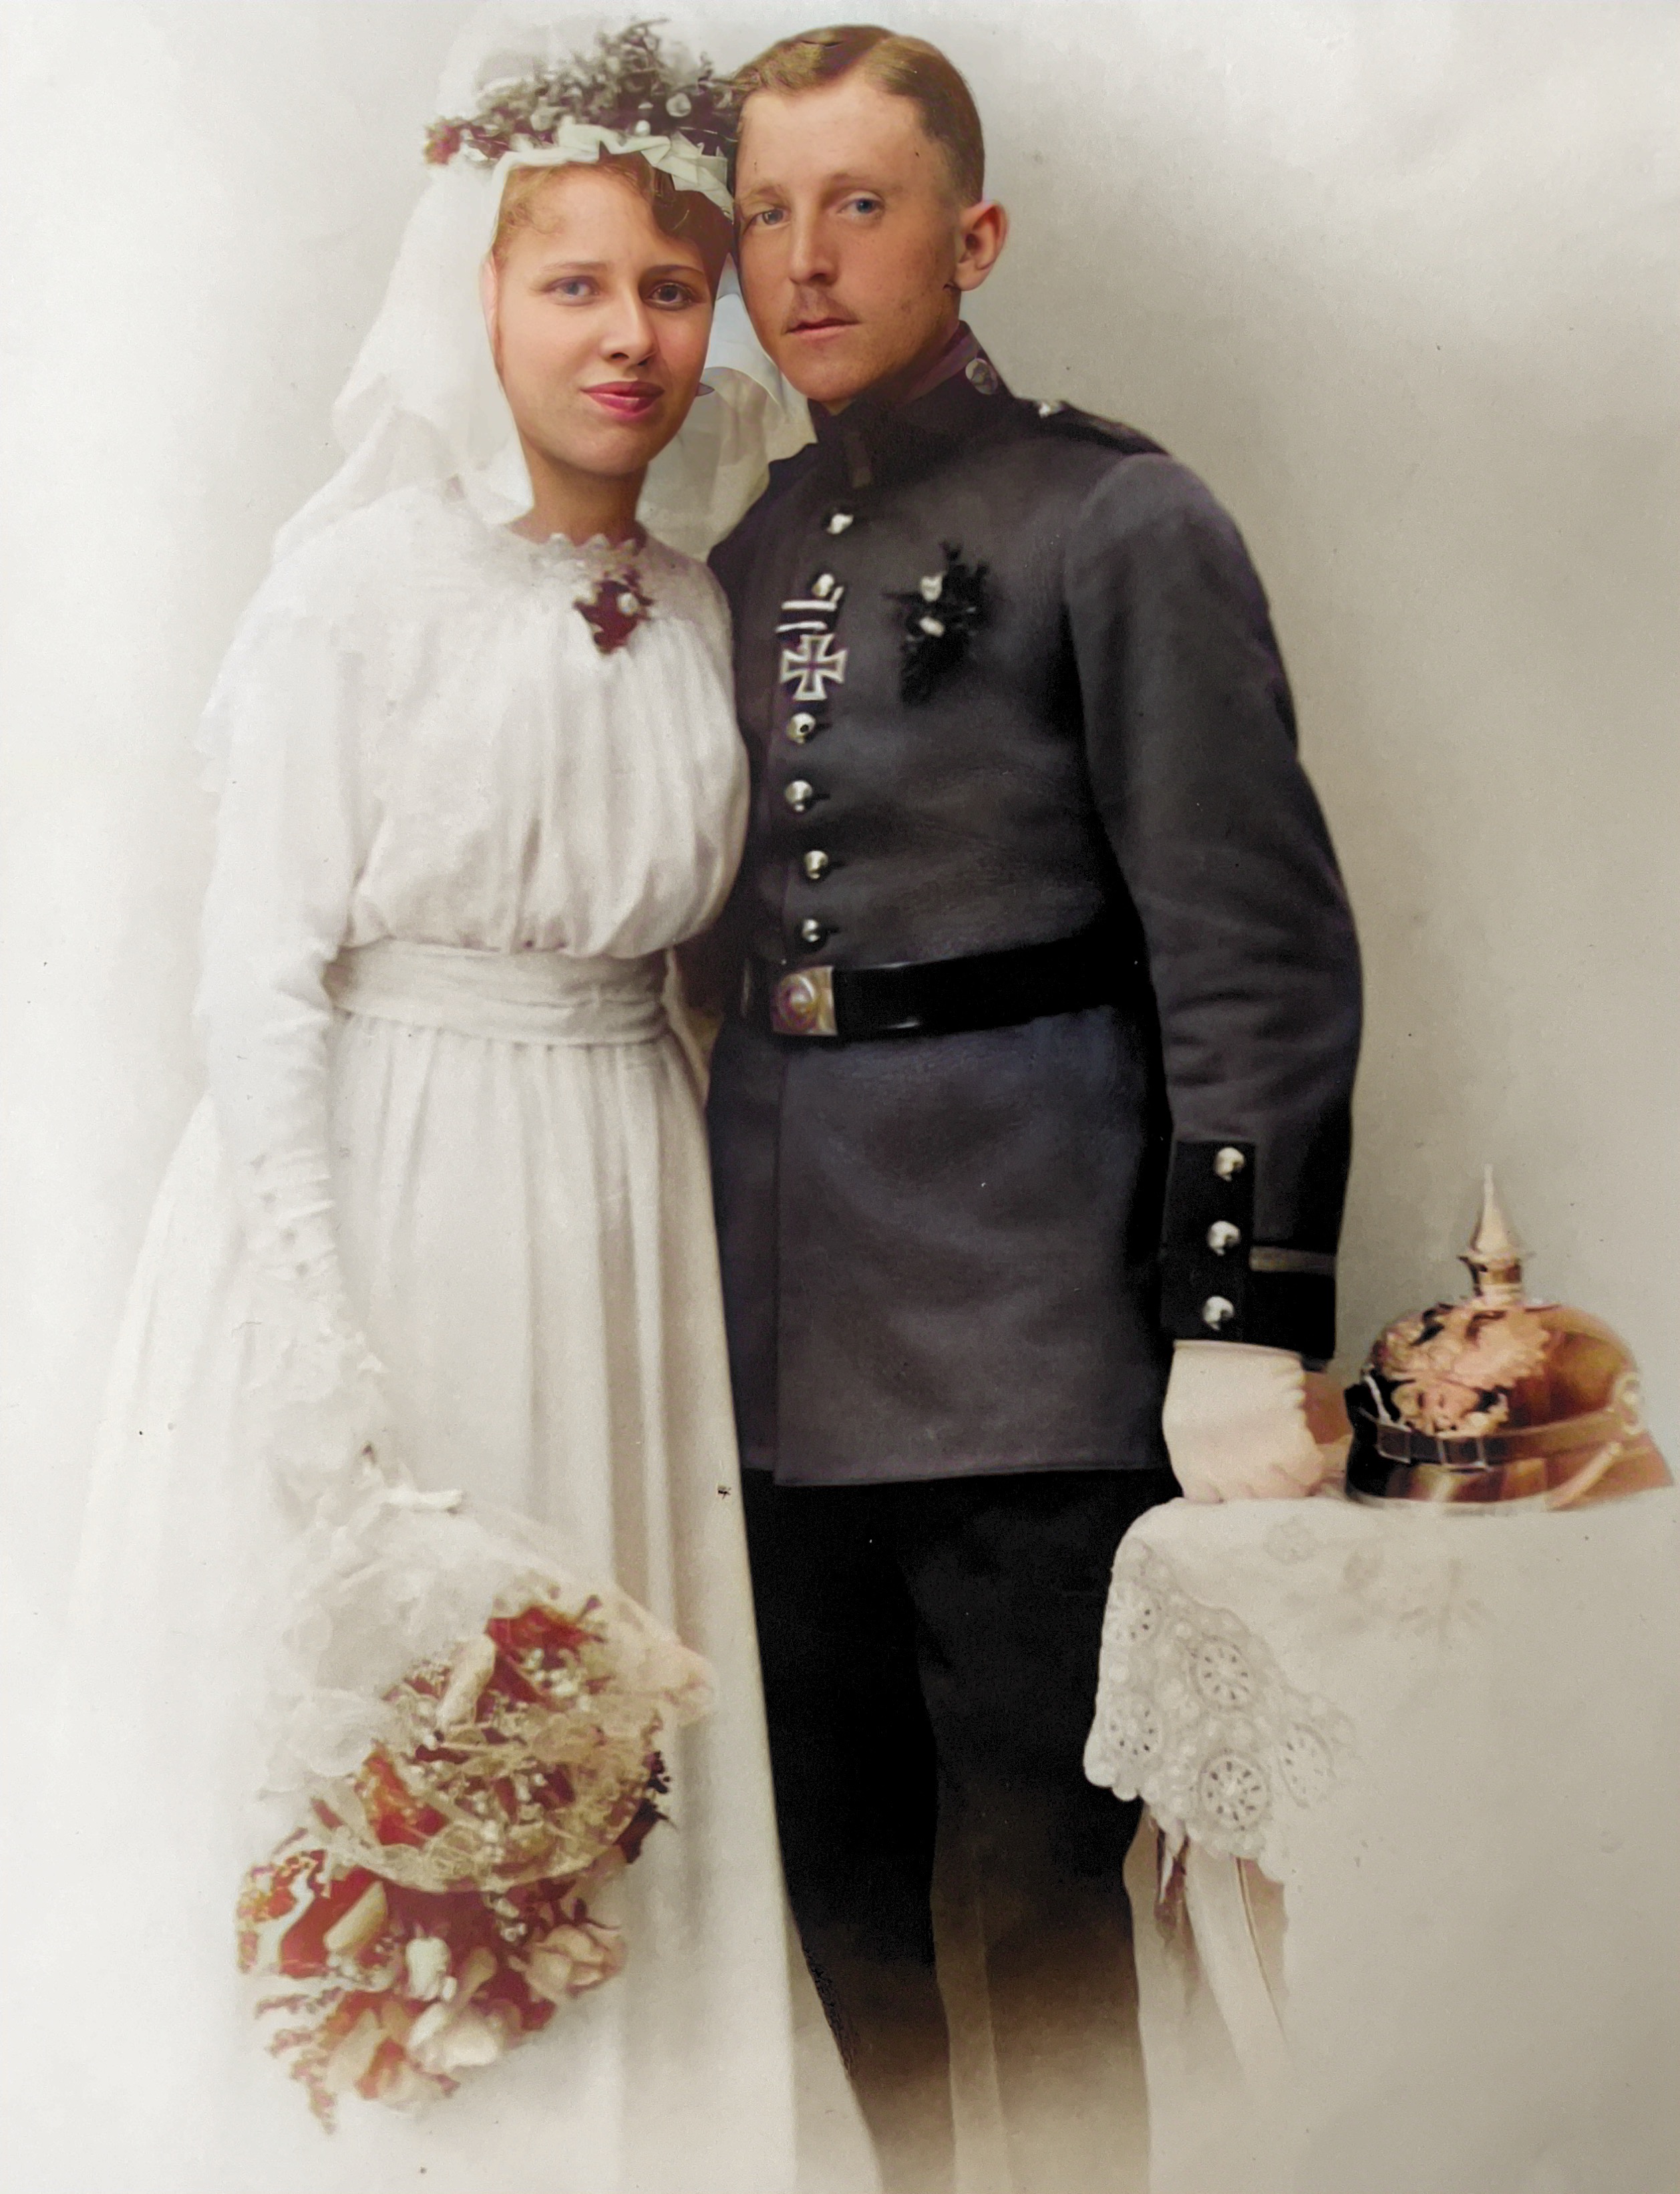 Farmor och farfar gifter sig den 30 april 1919